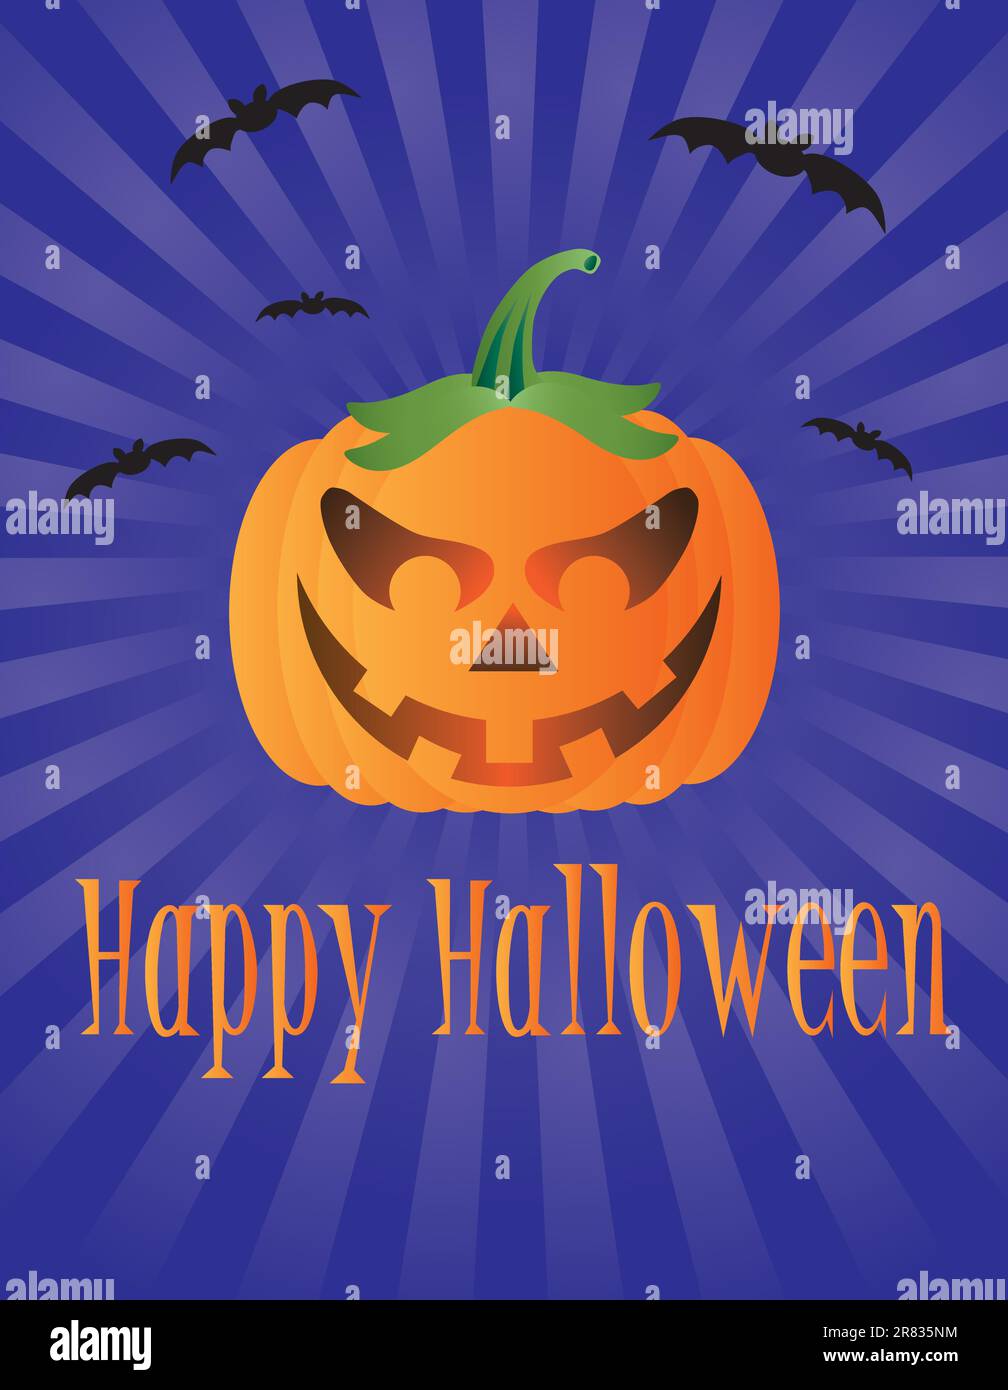 Happy Halloween citrouille avec le vol des chauves-souris et de souhaits texte Illustration Illustration de Vecteur